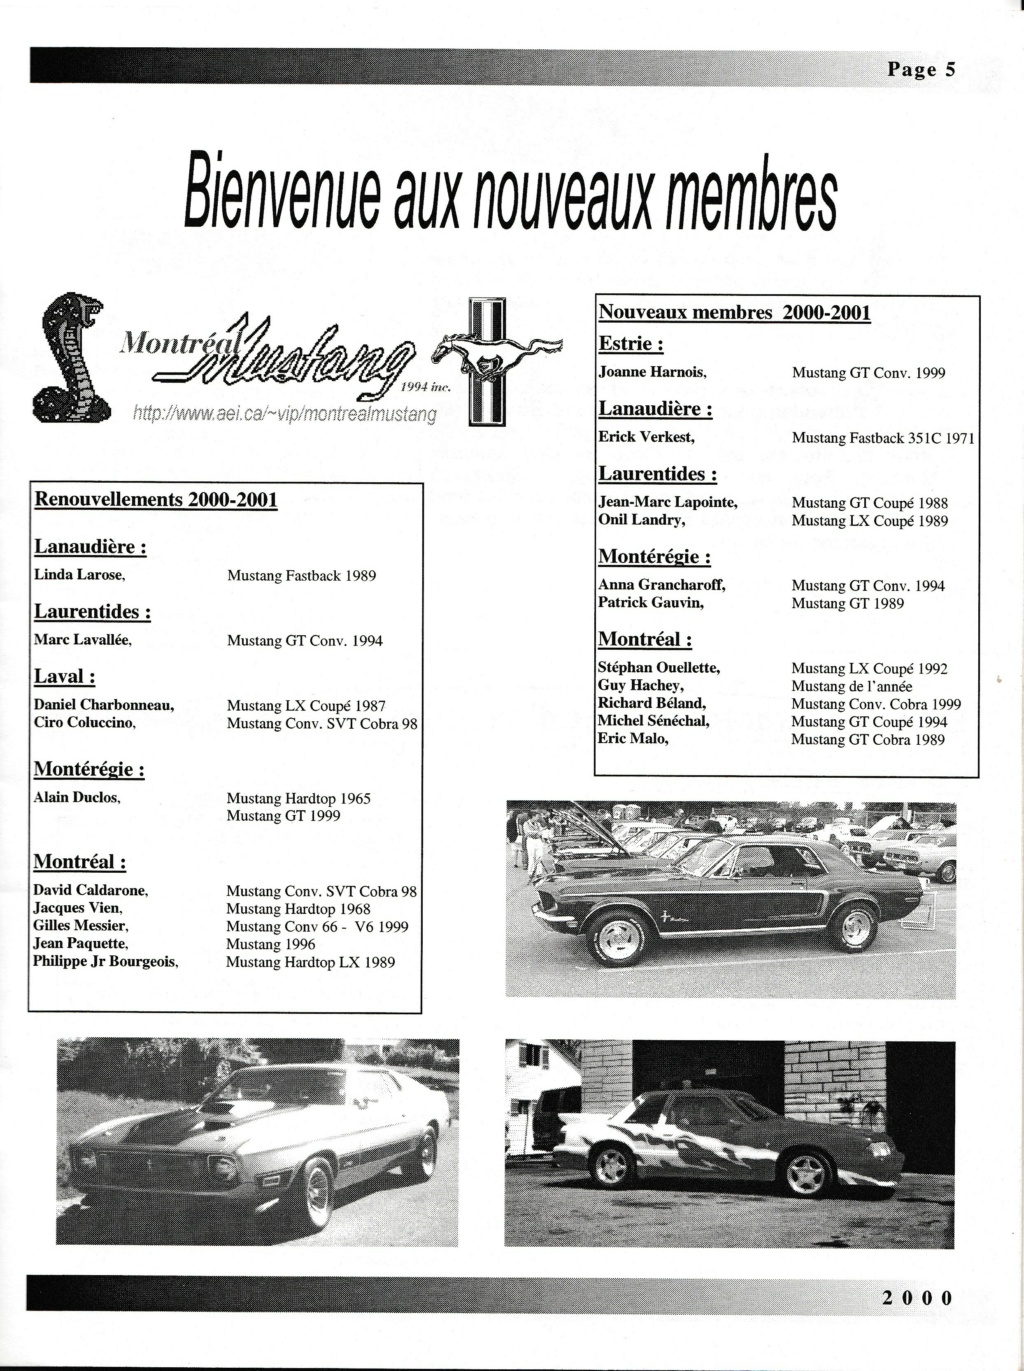 Montréal Mustang dans le temps! 1981 à aujourd'hui (Histoire en photos) - Page 9 Img_2515